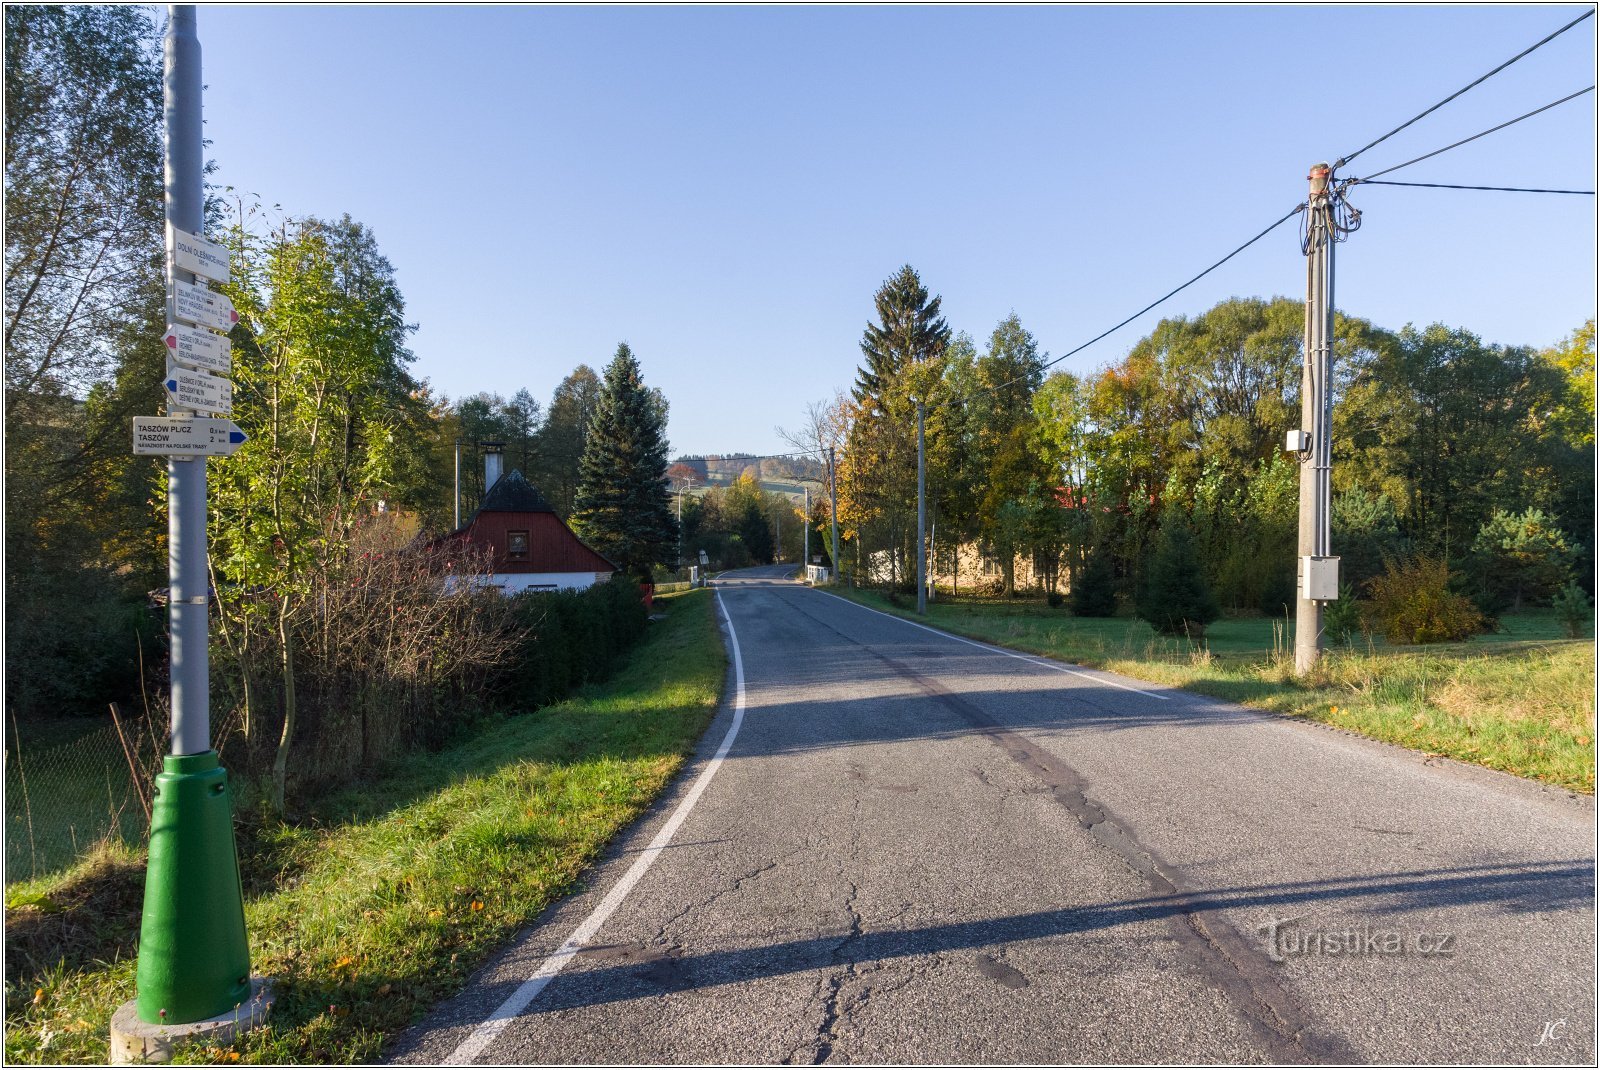 3-Dolní Olešnice, cruce de caminos, camino a Dobruška